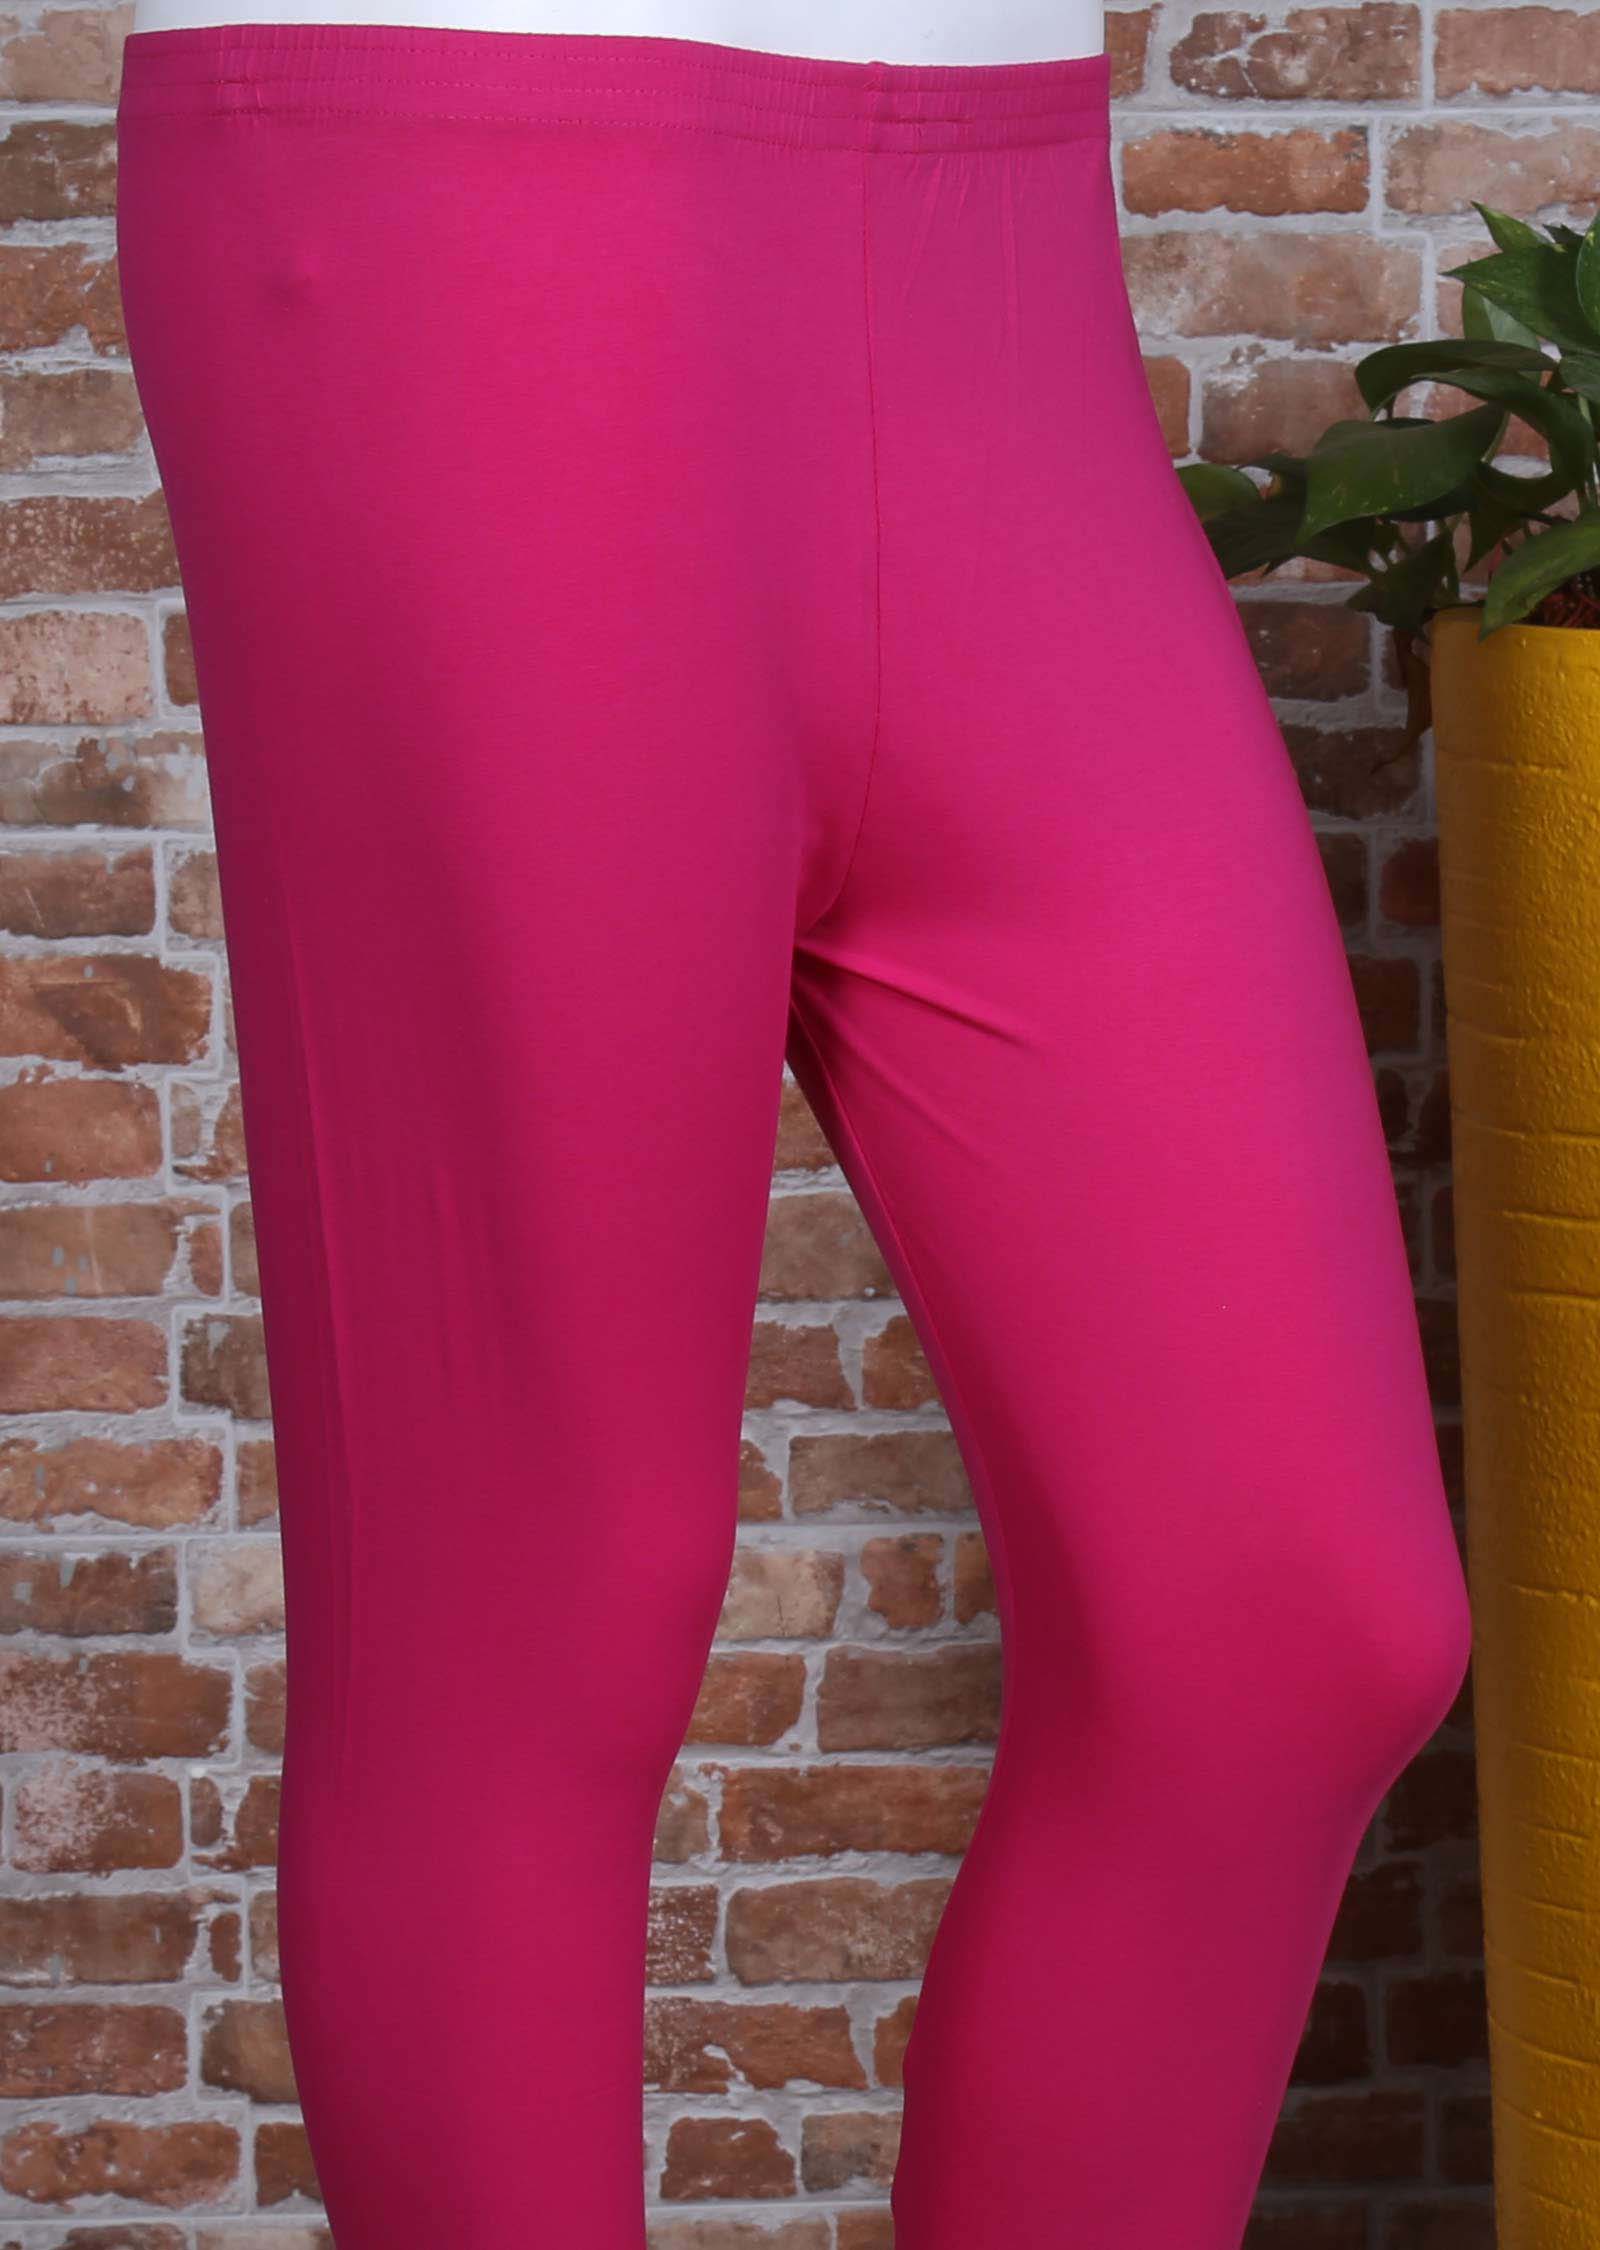 Pink Lycra leggings